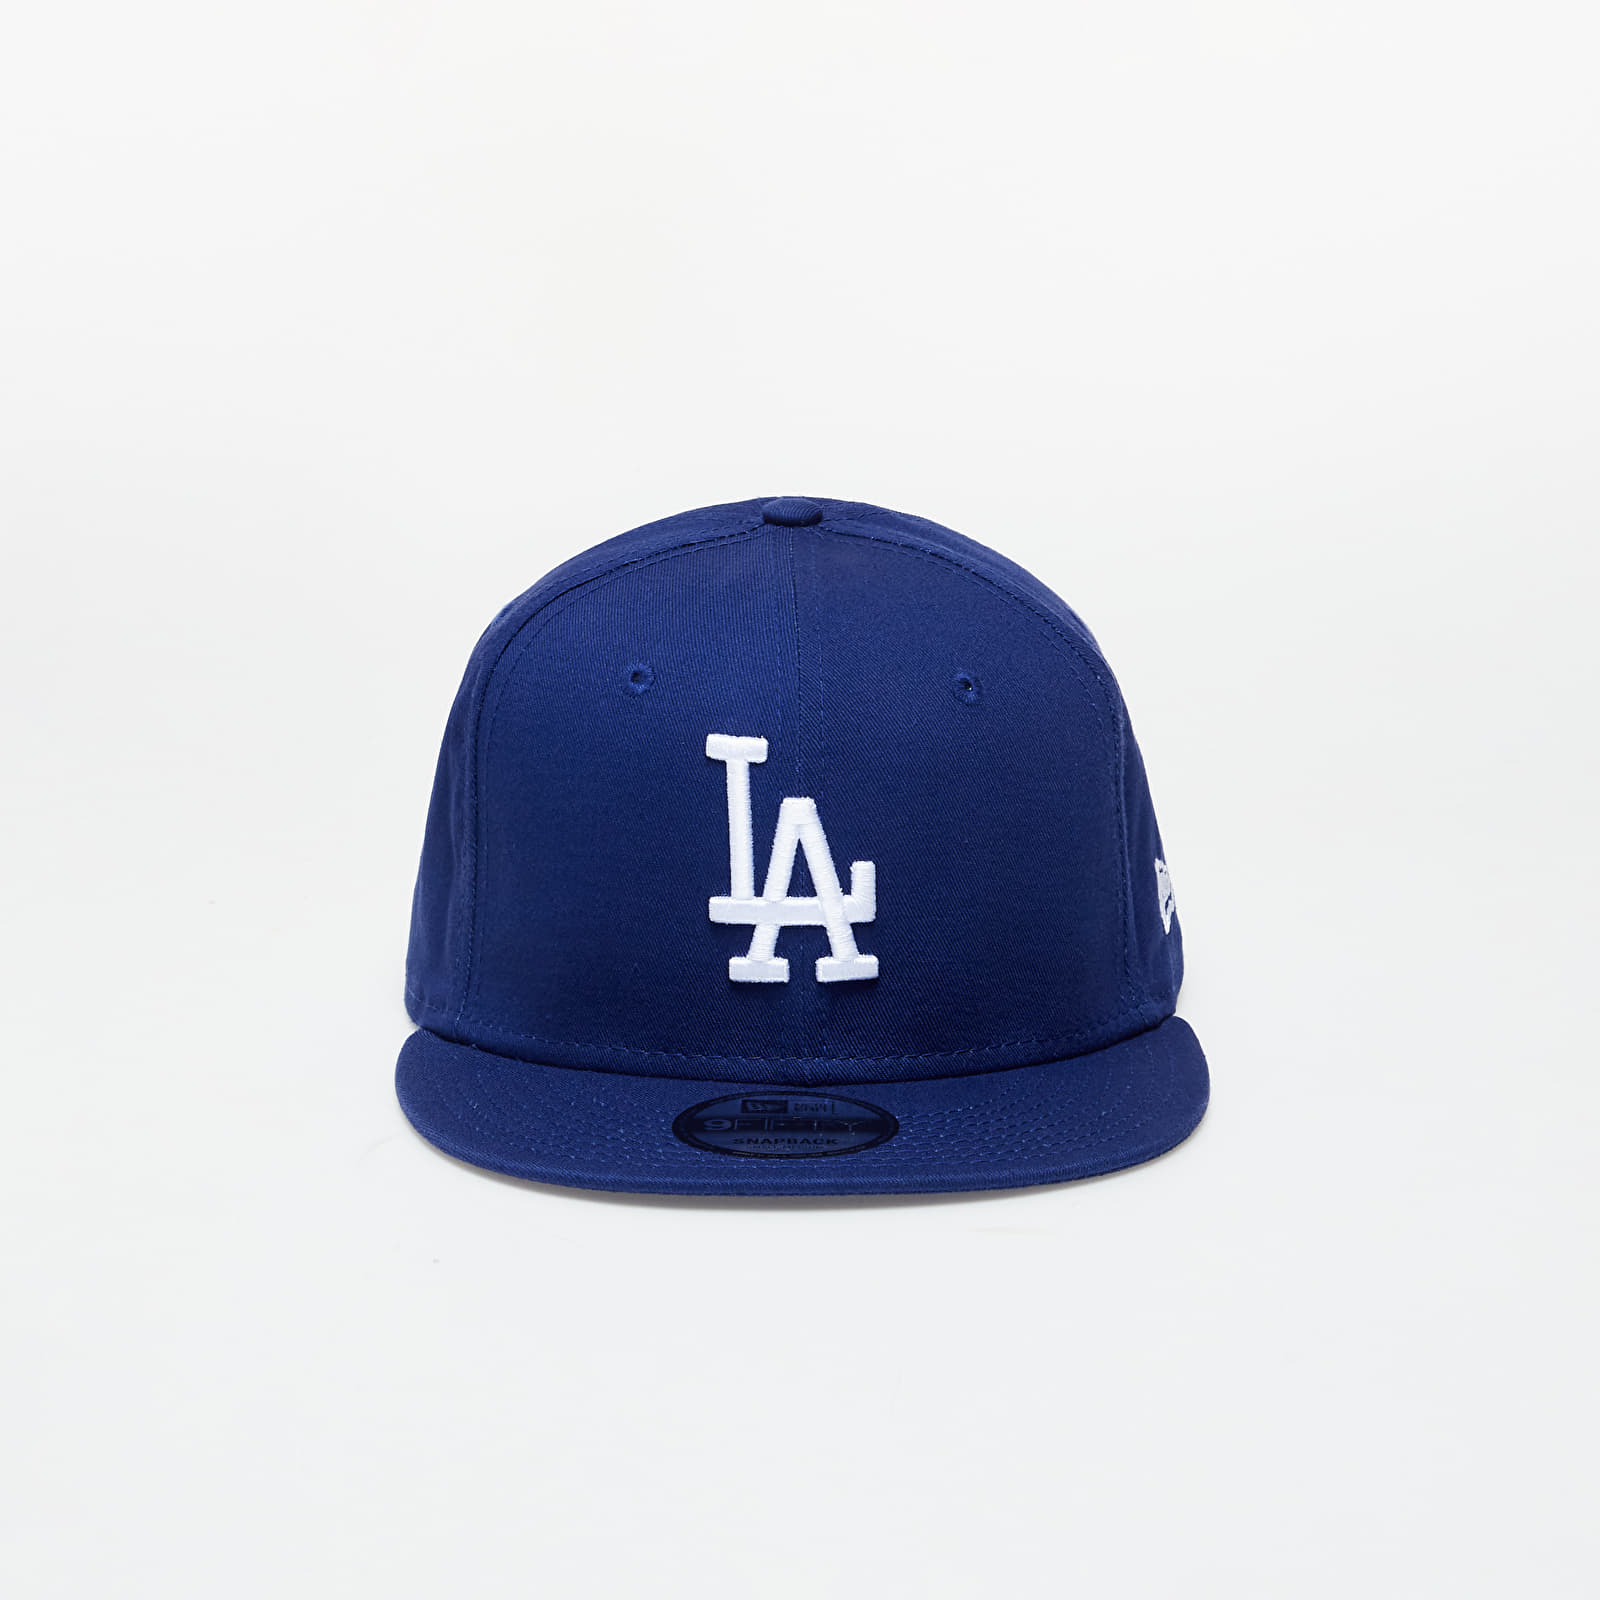 Caps New Era 9Fifty MLB Los Angeles Dodgers Cap Team